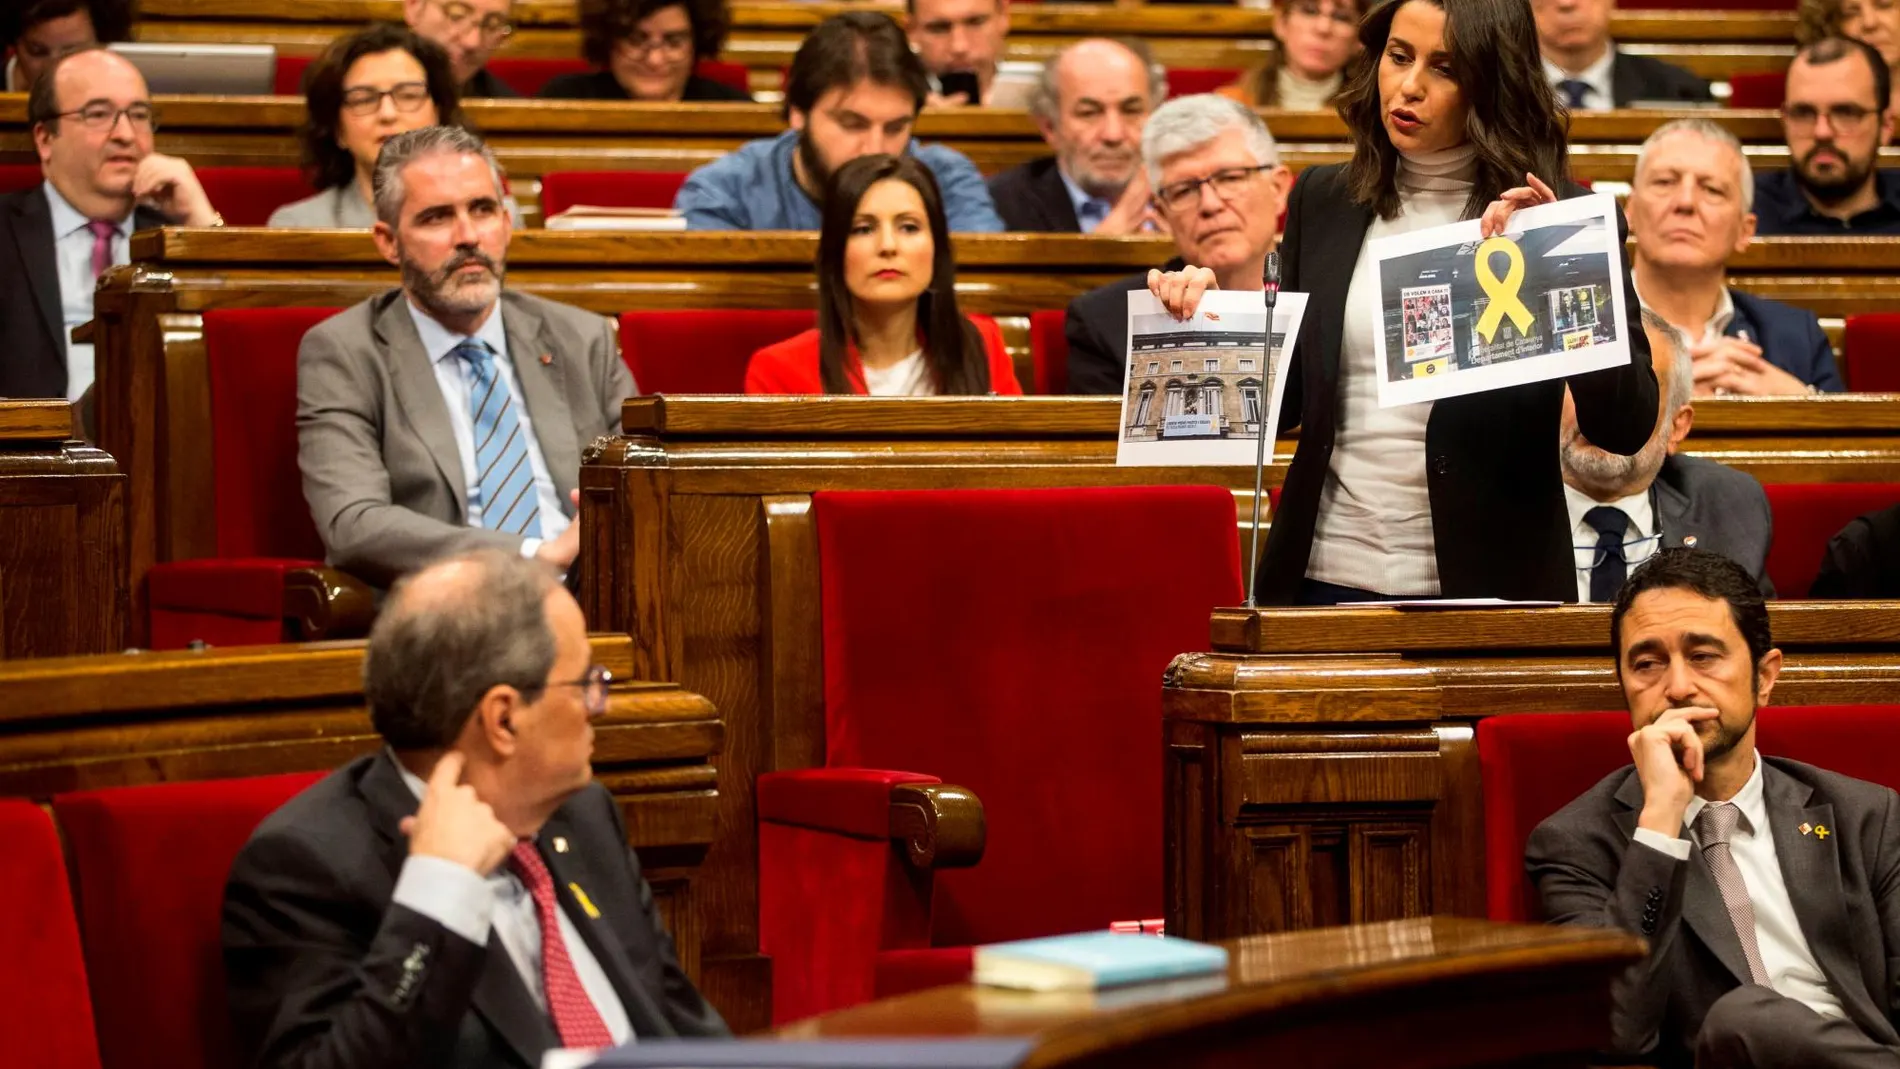 La lider de Ciutadans, Inés Arrimadas, enseña unas fotos de lazos amarillos en edificios públicos al presidente de la Generalitat, Quim Torra (i), durante su intervención en el pleno del Parlament